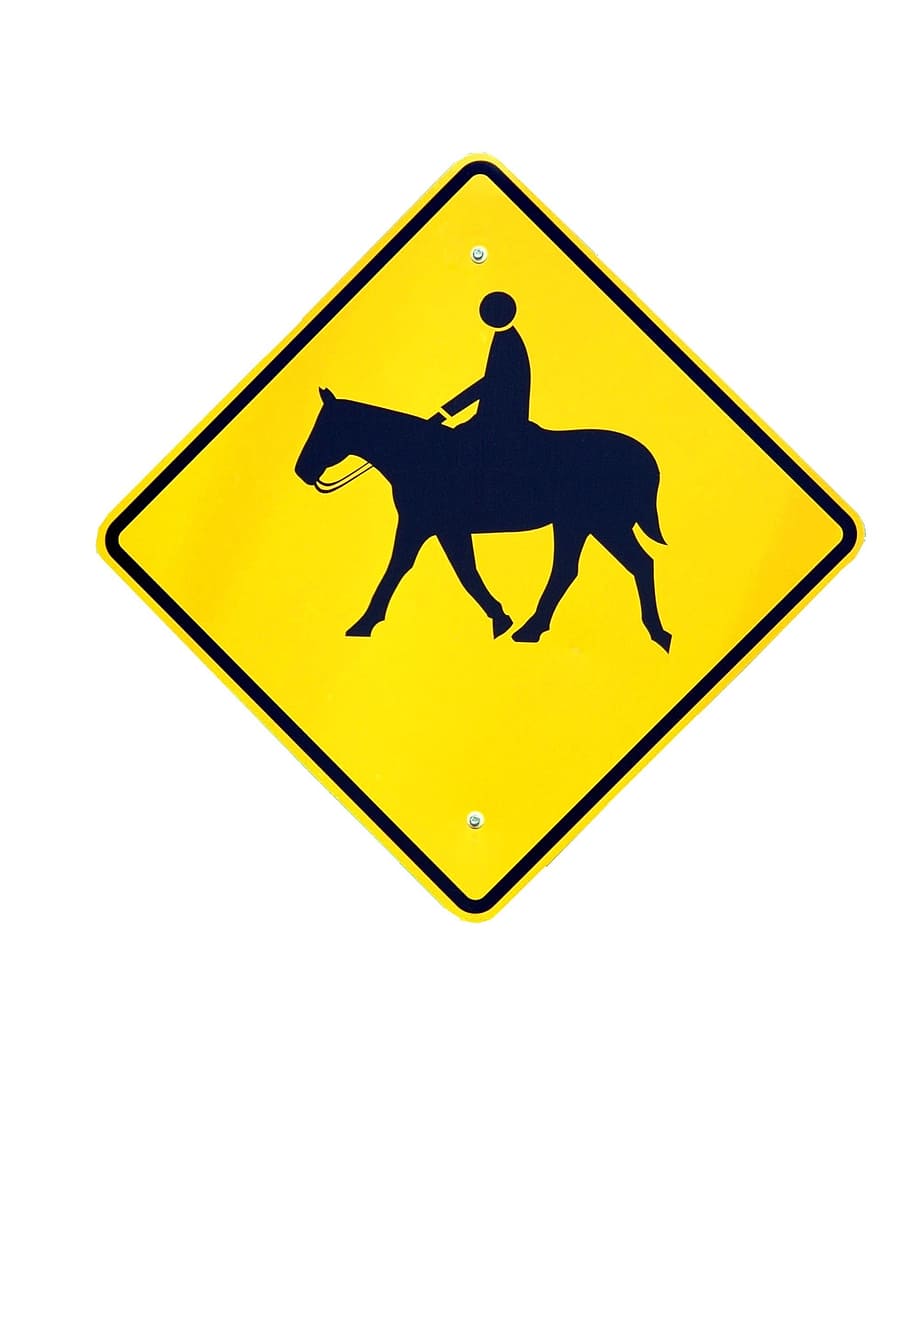 advertencia, tráfico, signo, peligro, seguridad, precaución, triángulo, poner en peligro, aislado, carretera